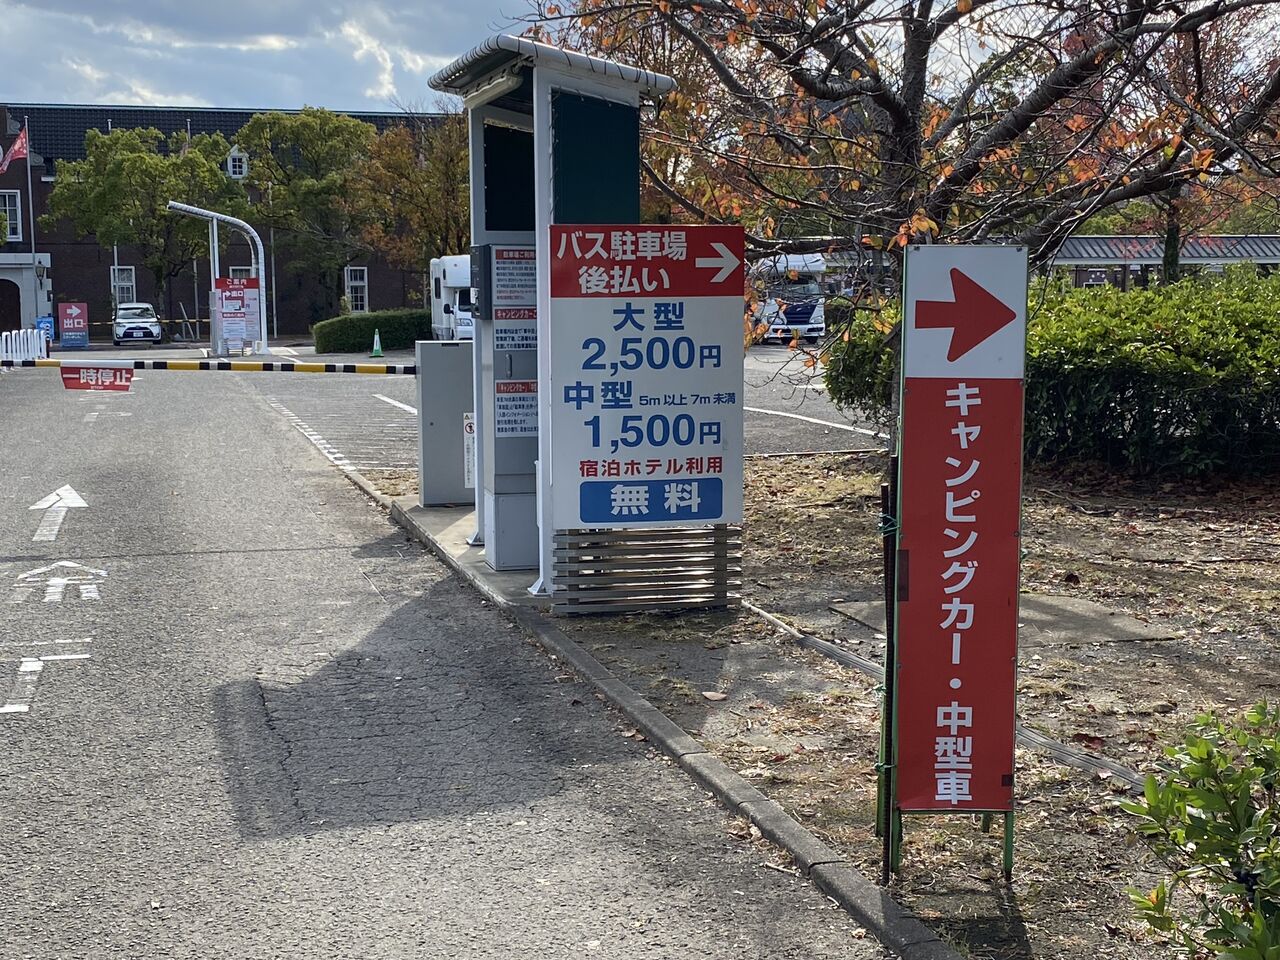 ハウステンボス キャンピングカーの駐車場は 長崎県佐世保市 くるま旅でぶらり日本めぐり